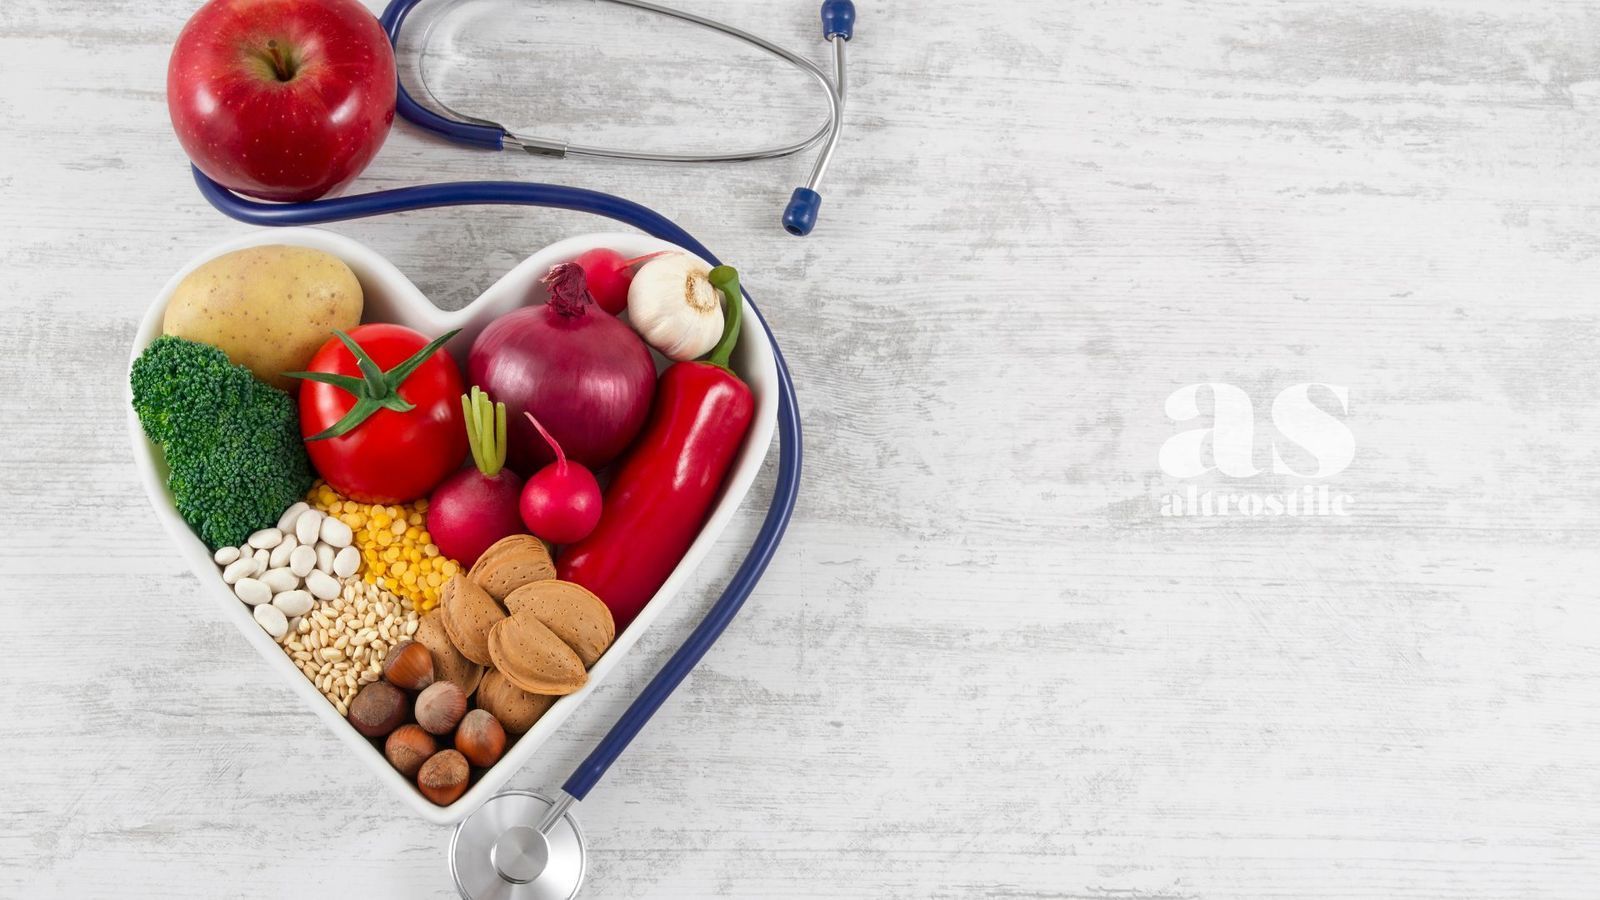 AltroStile • Cuore sano: 6 alimenti top per prevenire infarti e ictus